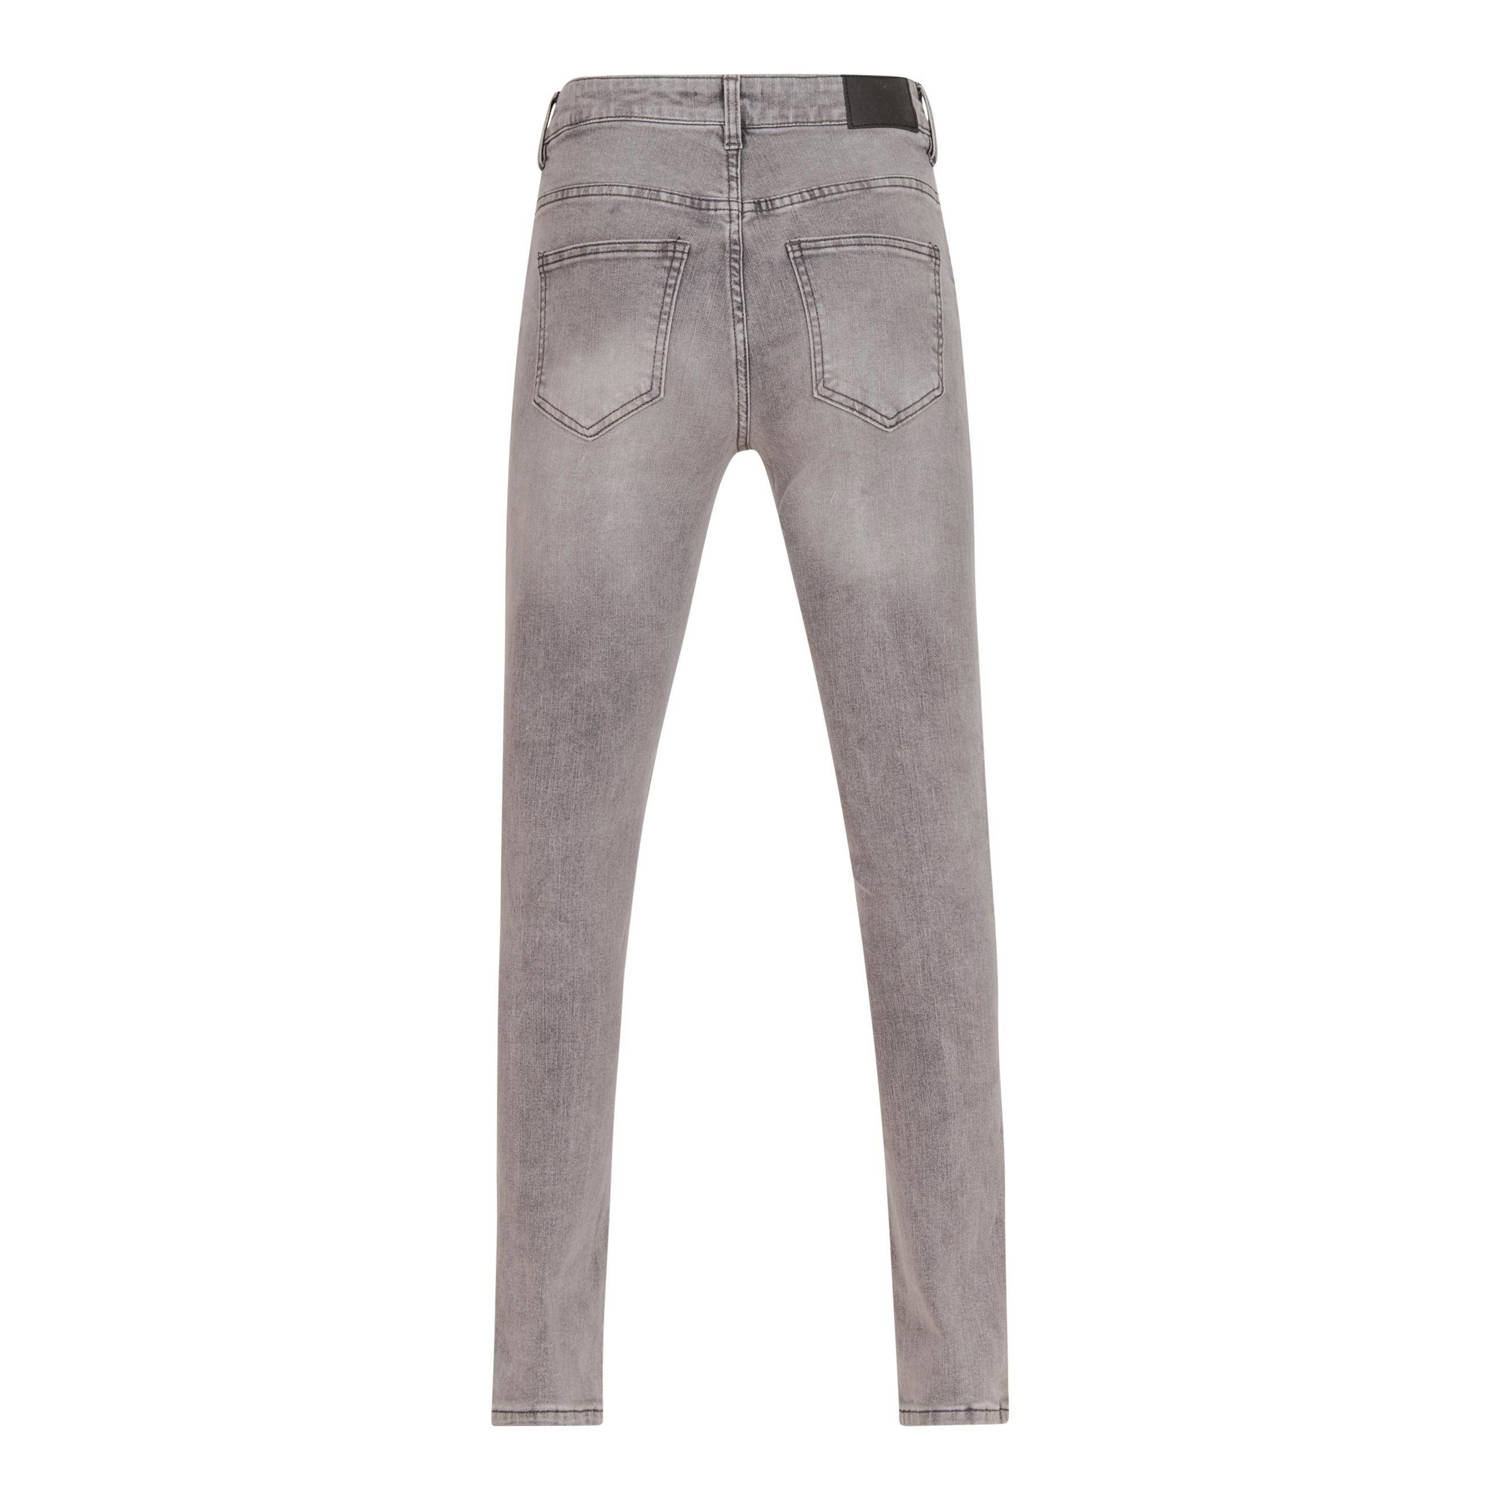 Shoeby skinny jeans grey denim